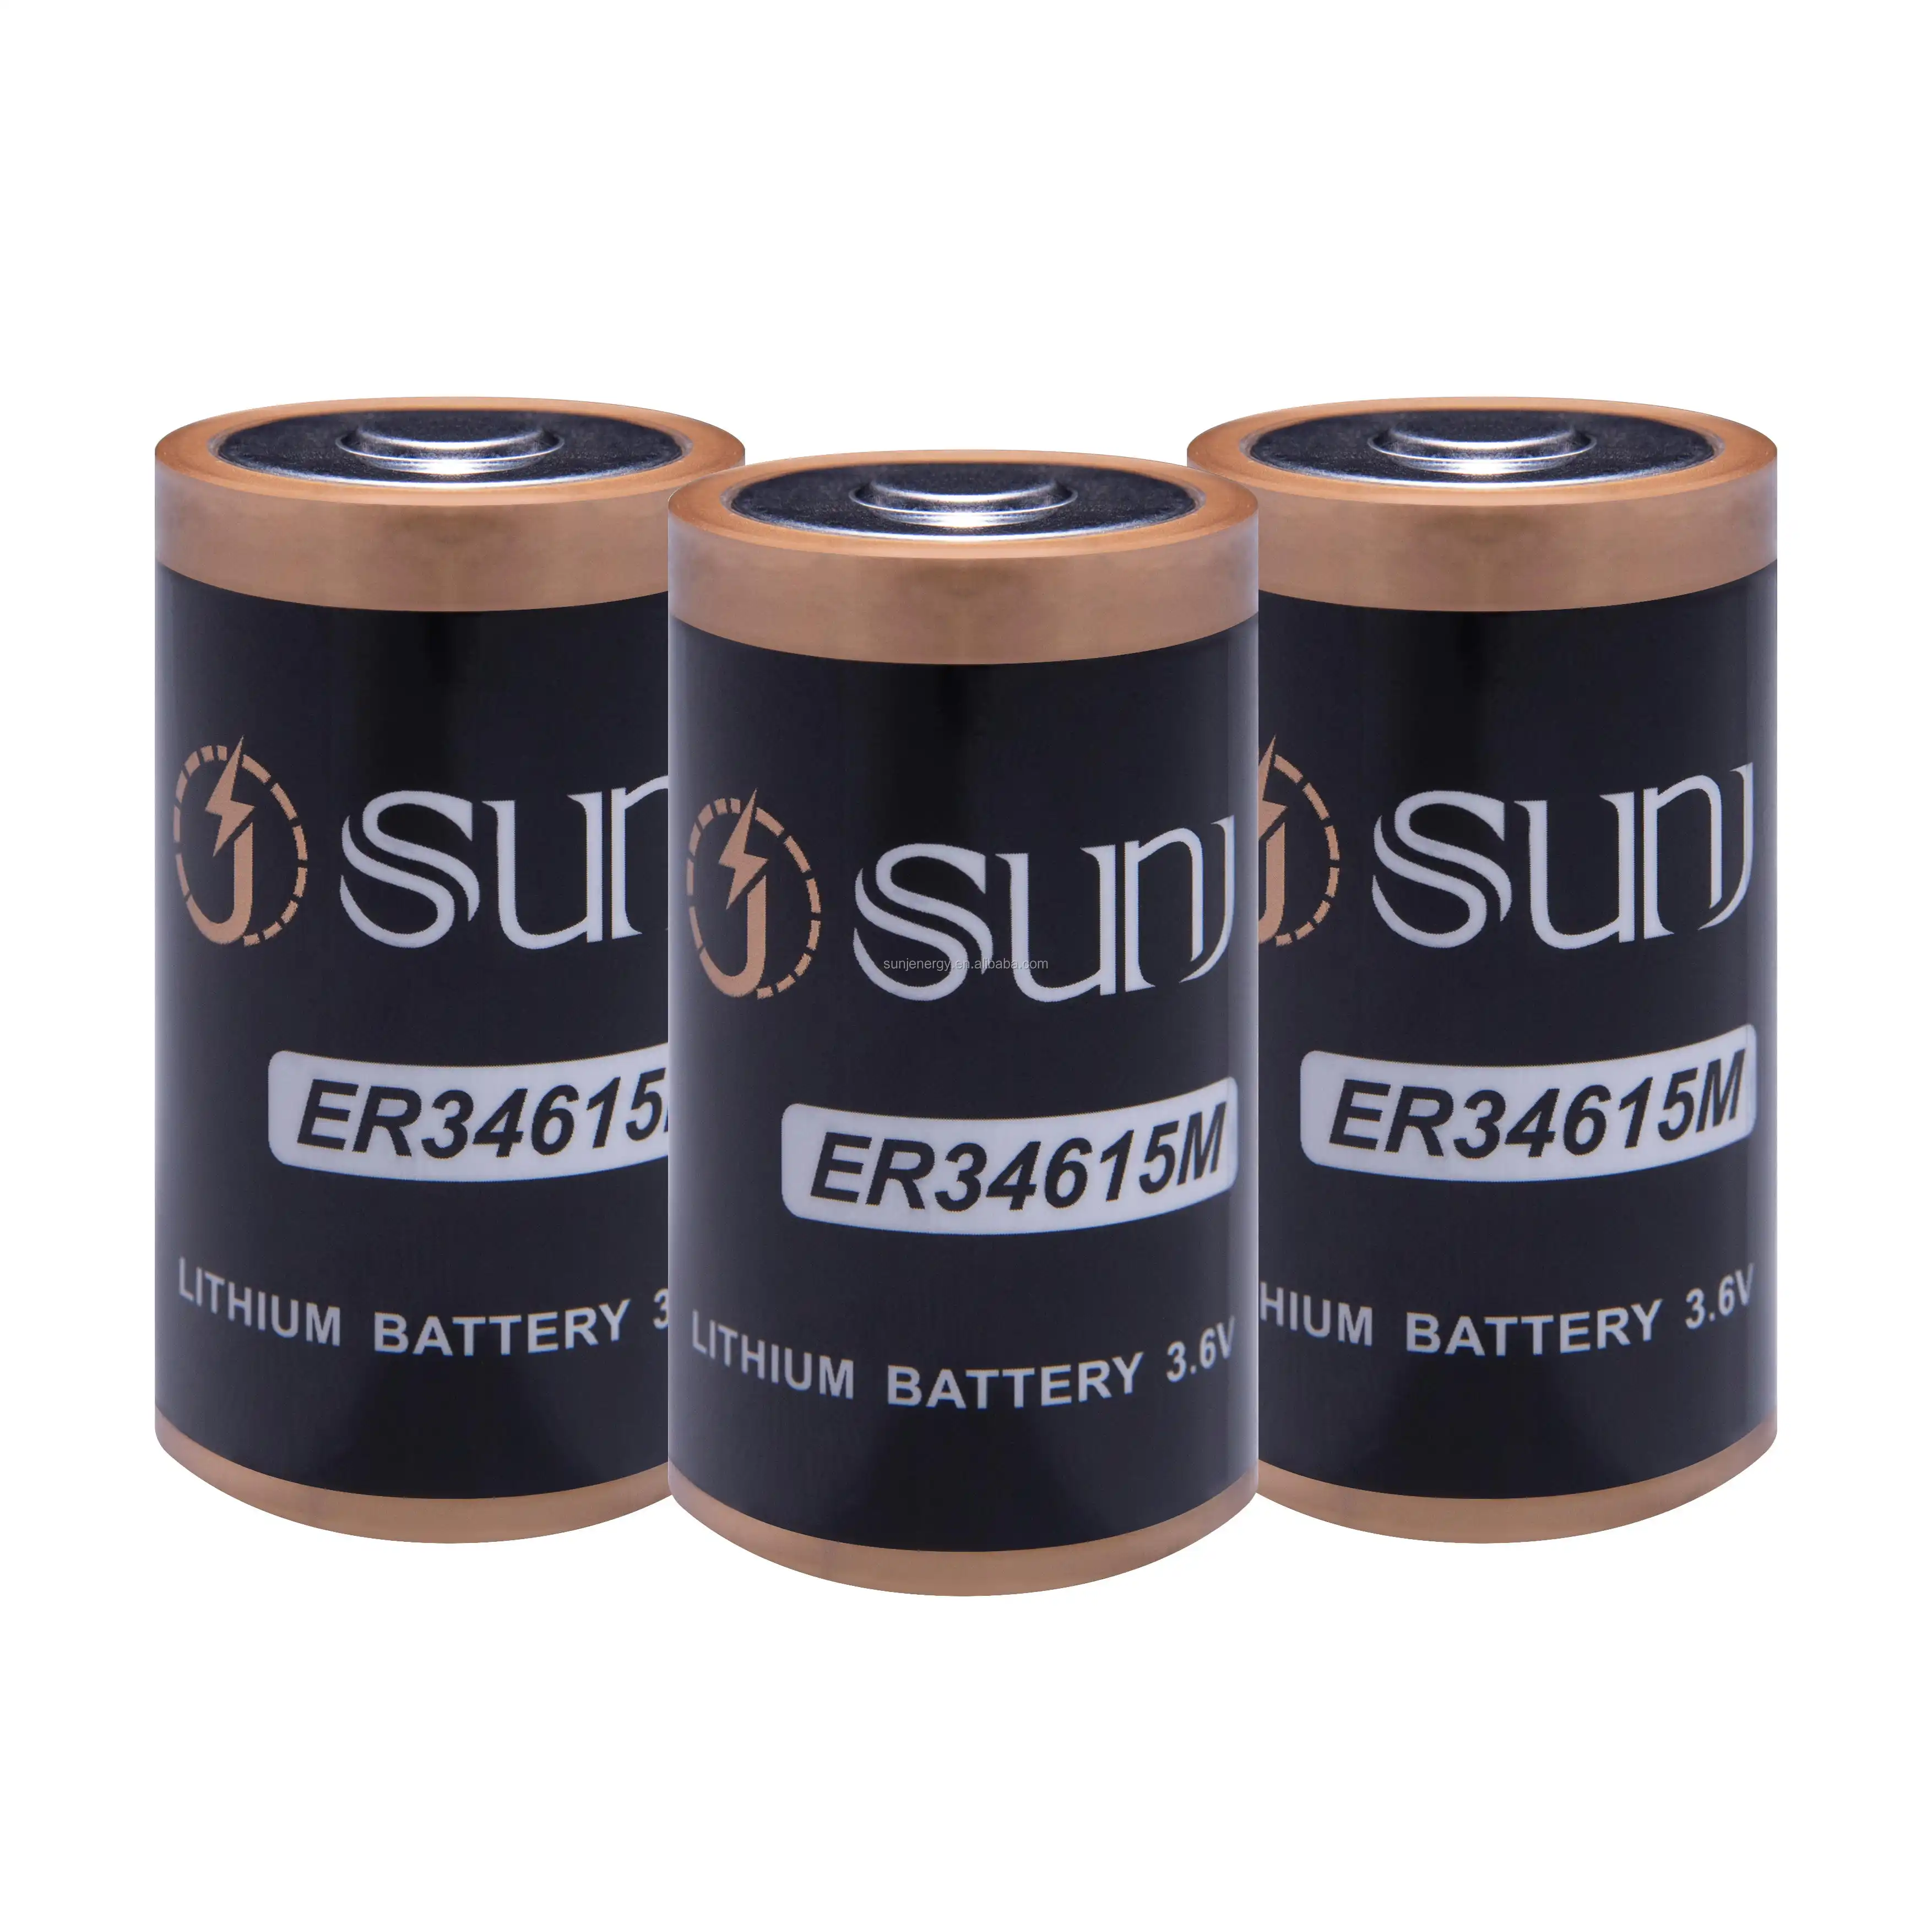 ER34615M Li-SOCL2 batterie 3.6V non-rechargeable batterie remplacer saft Lsh20